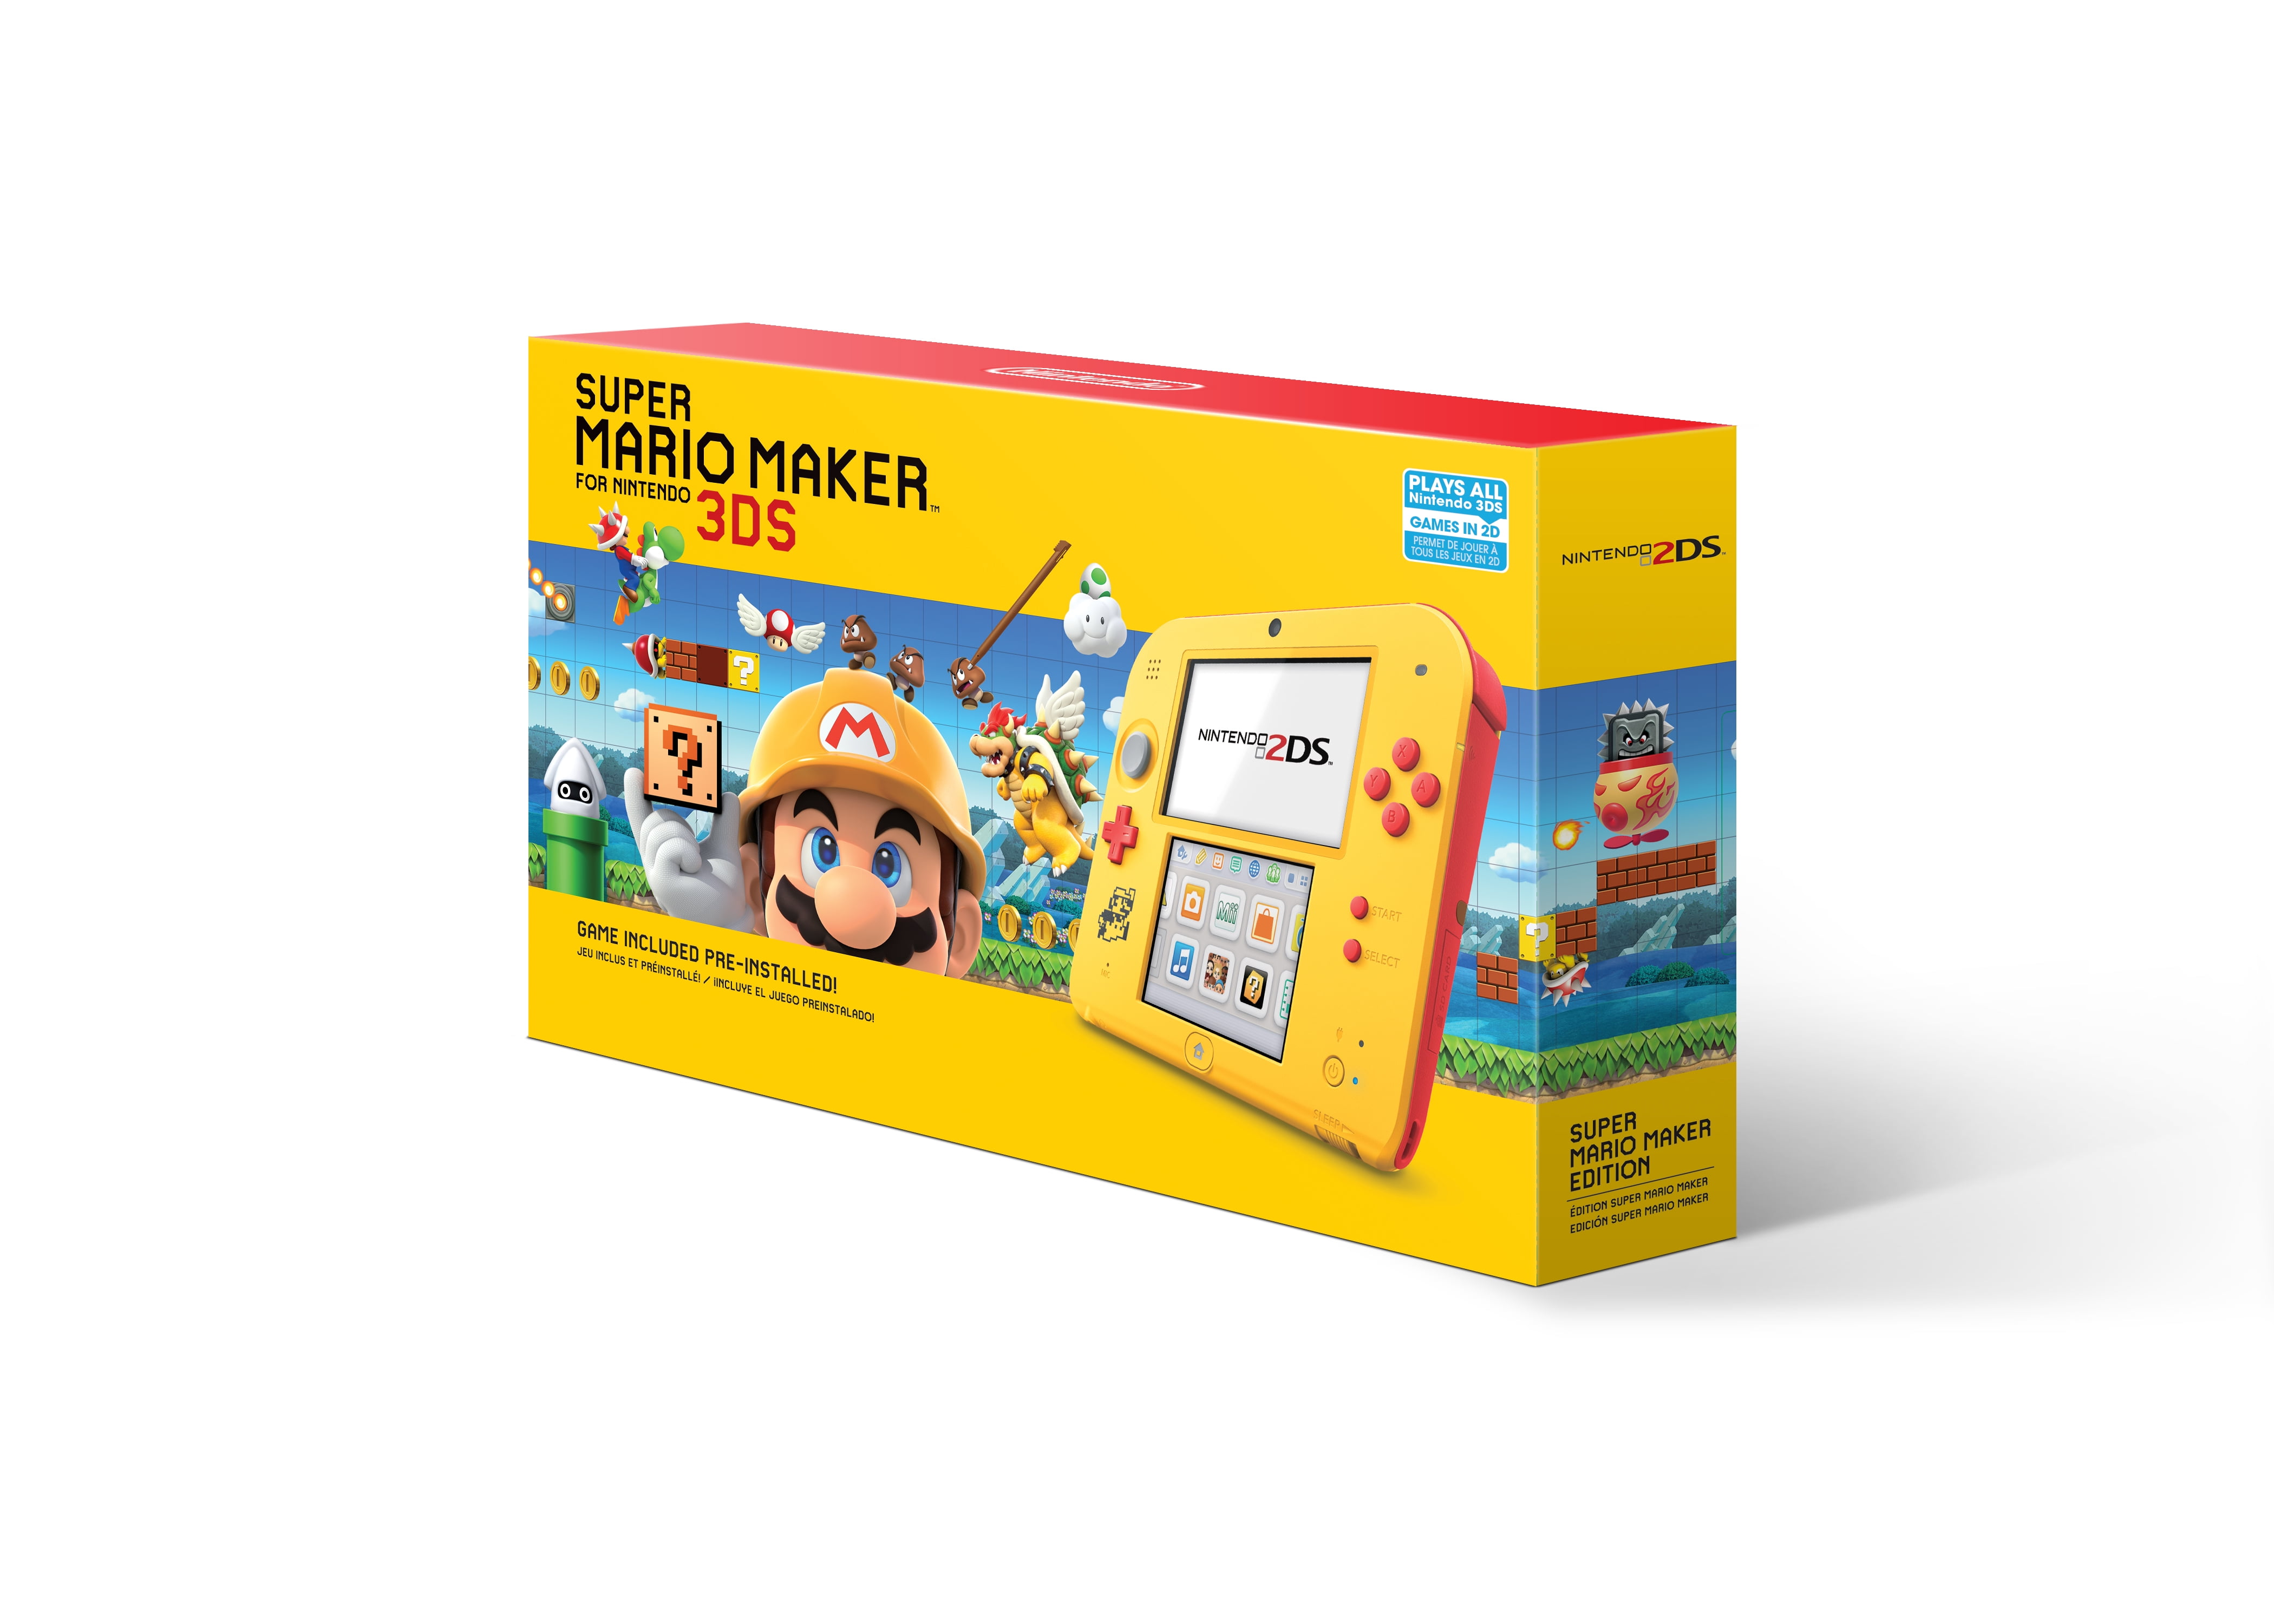 G jeg er træt Tidsserier Nintendo 2DS System with Super Mario Maker (Pre-Installed), Yellow / Red,  FTRSYBDW - Walmart.com